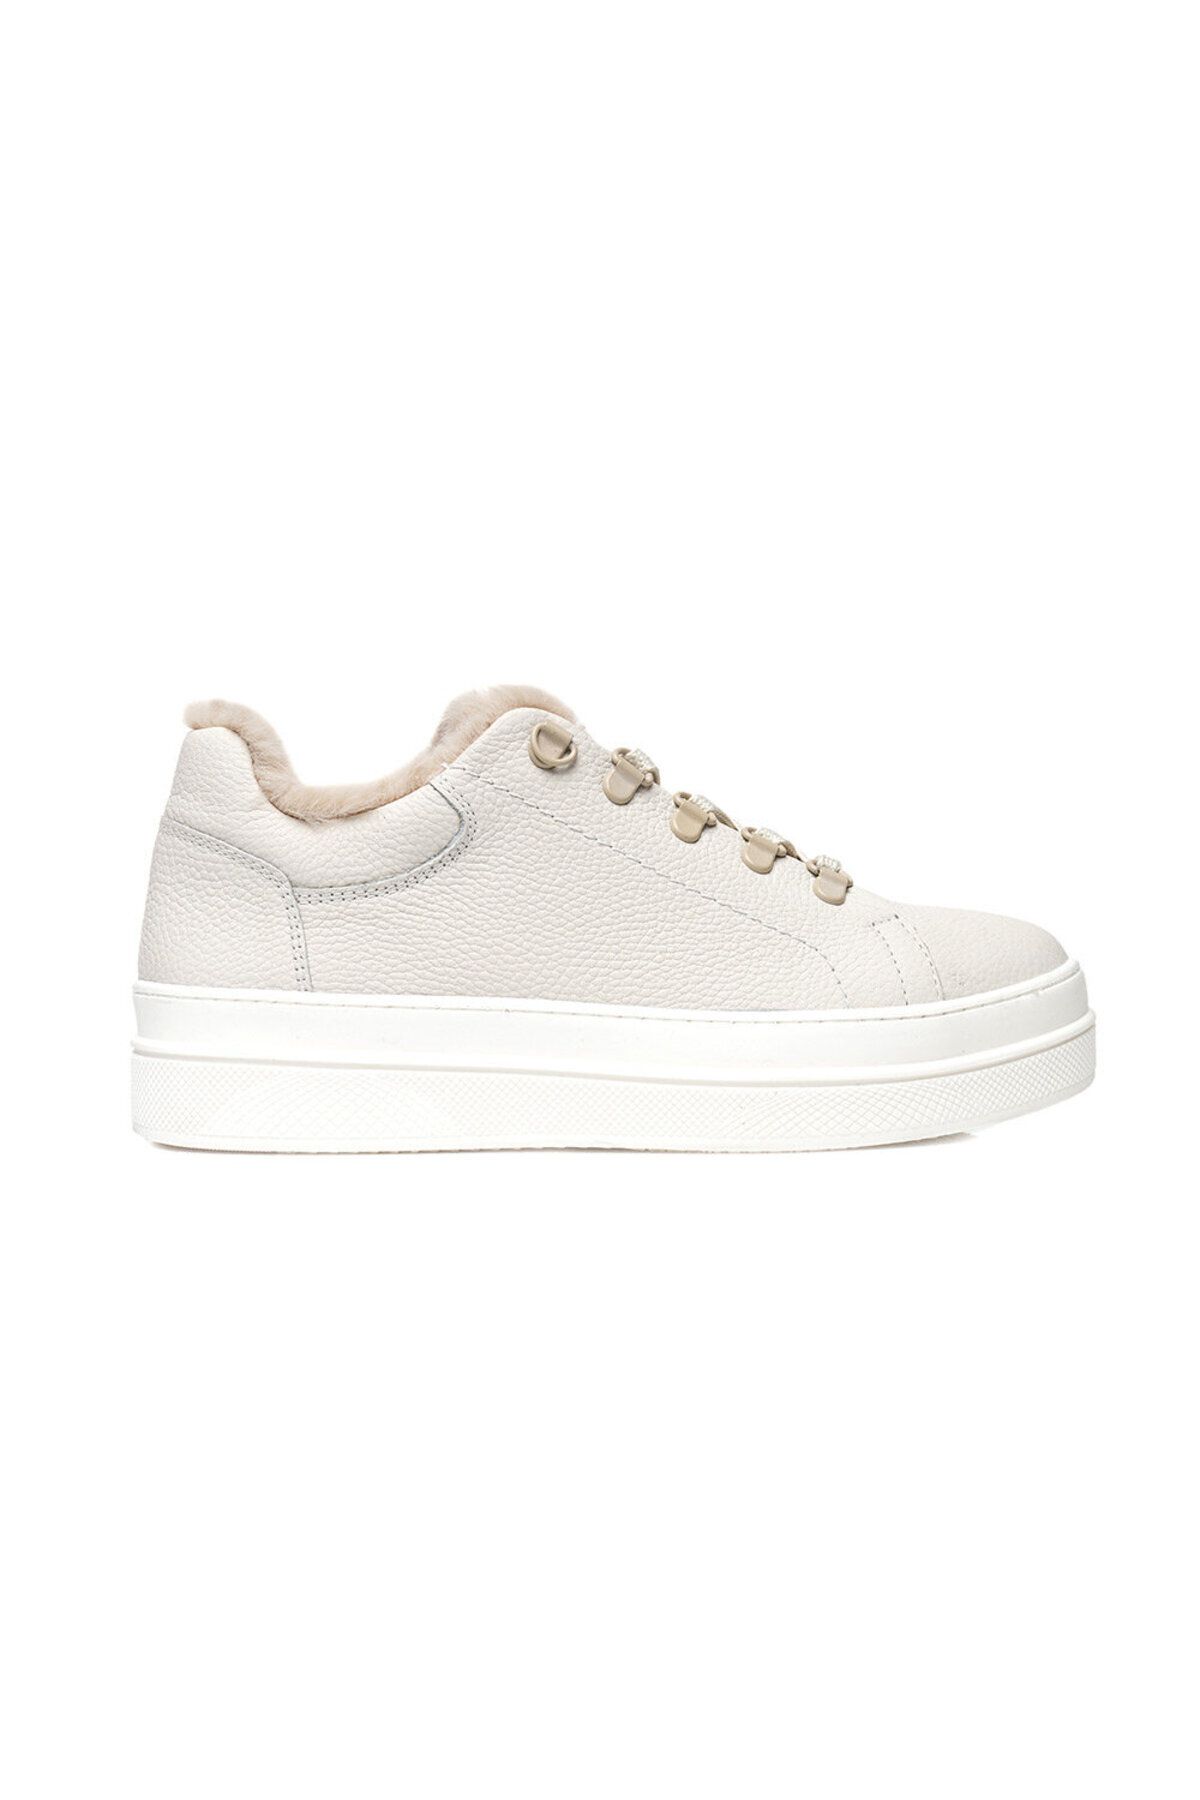 Greyder Kadın Kirli Beyaz Hakiki Deri Sneaker Ayakkabı 3k2sa33070